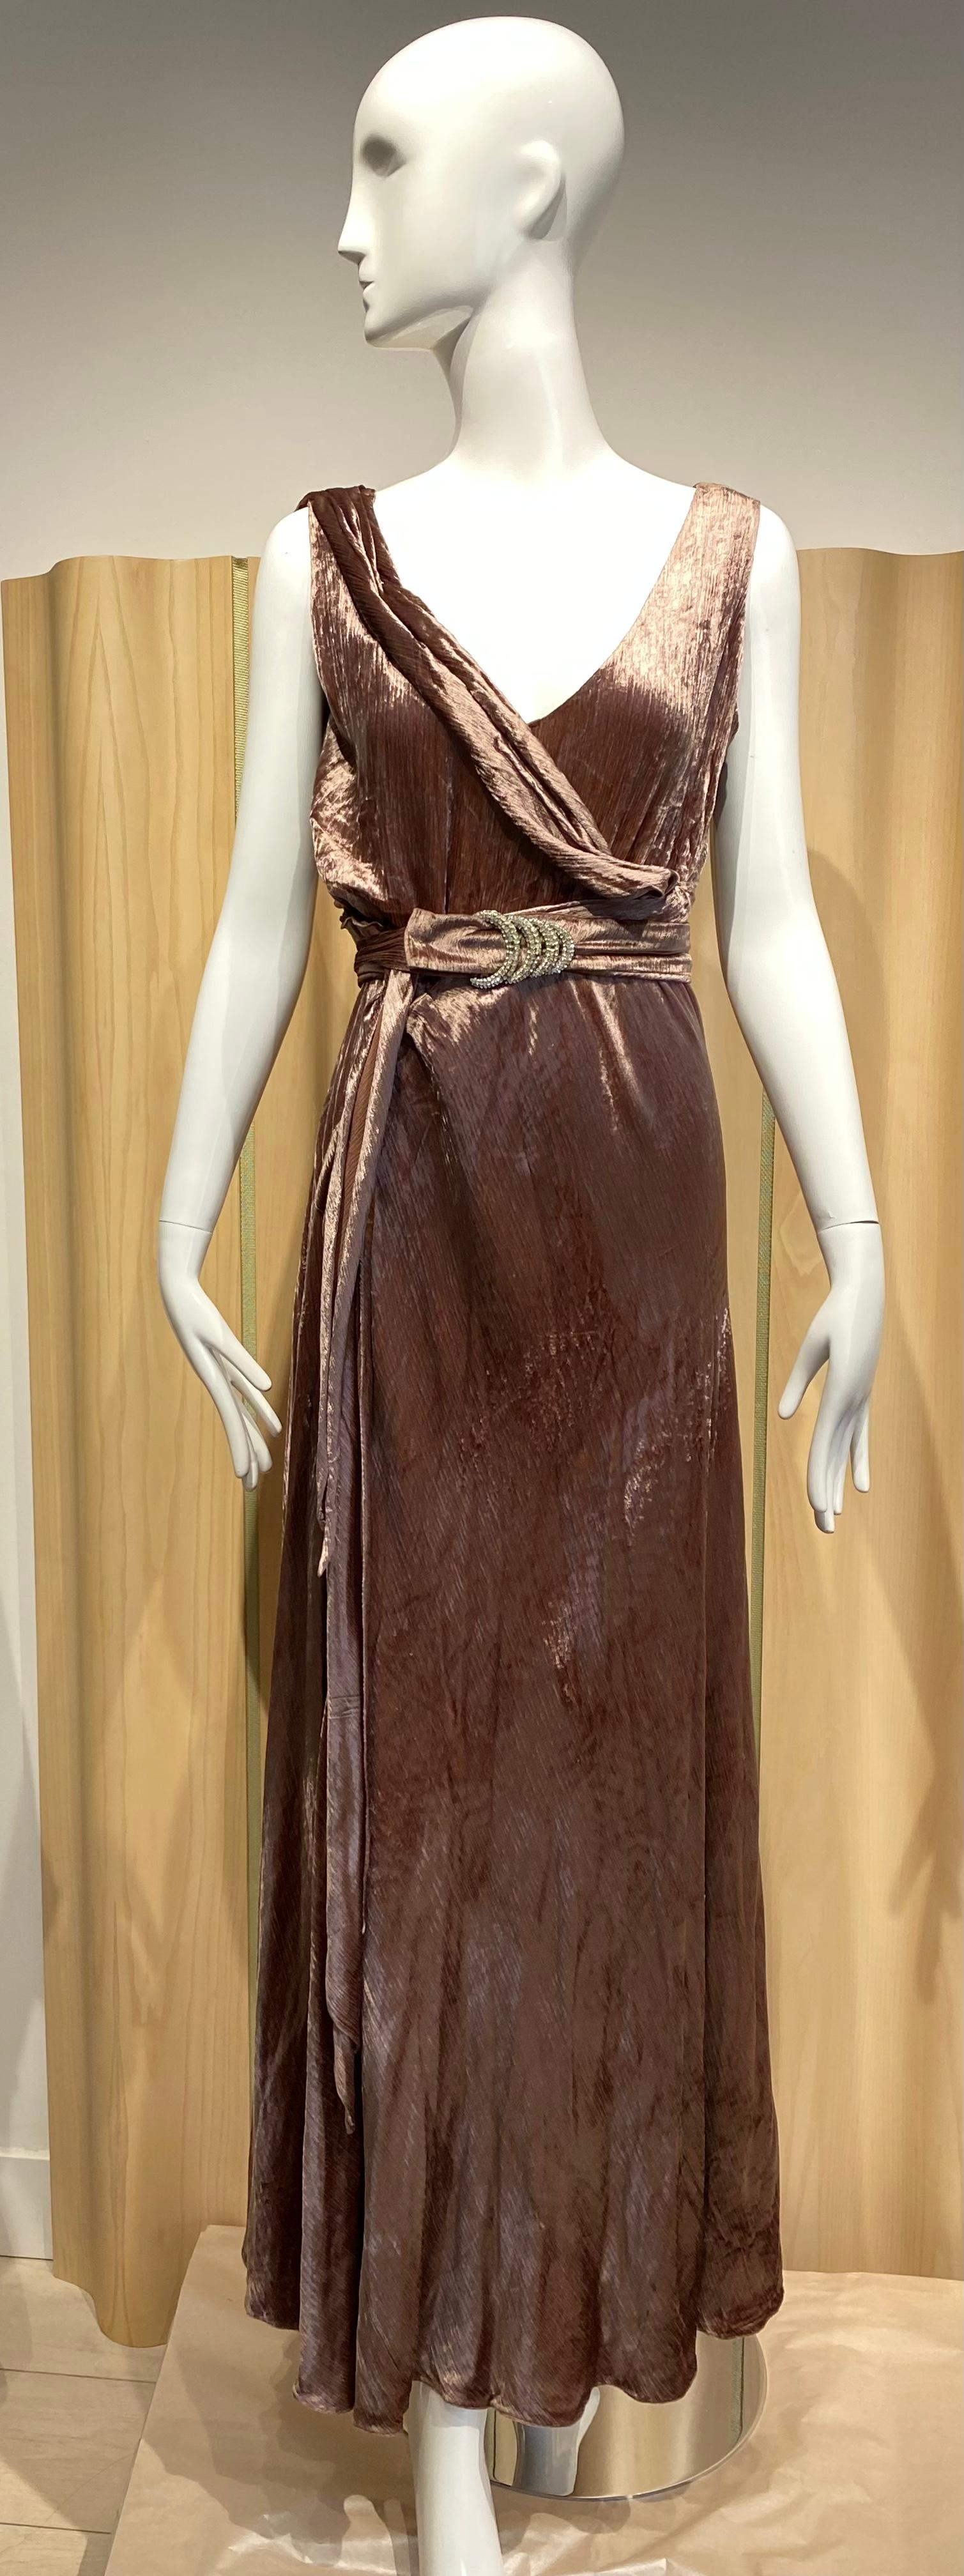 1930er Jahre mokkabraunes, ärmelloses Cocktailkleid aus Samt mit V-Ausschnitt und 3/4-Ärmeln/ Jacke mit Kunstpelzbesatz.
Perfekt für Hochzeiten oder Cocktailpartys.
Gürtel 
Passend für US Größe 8

